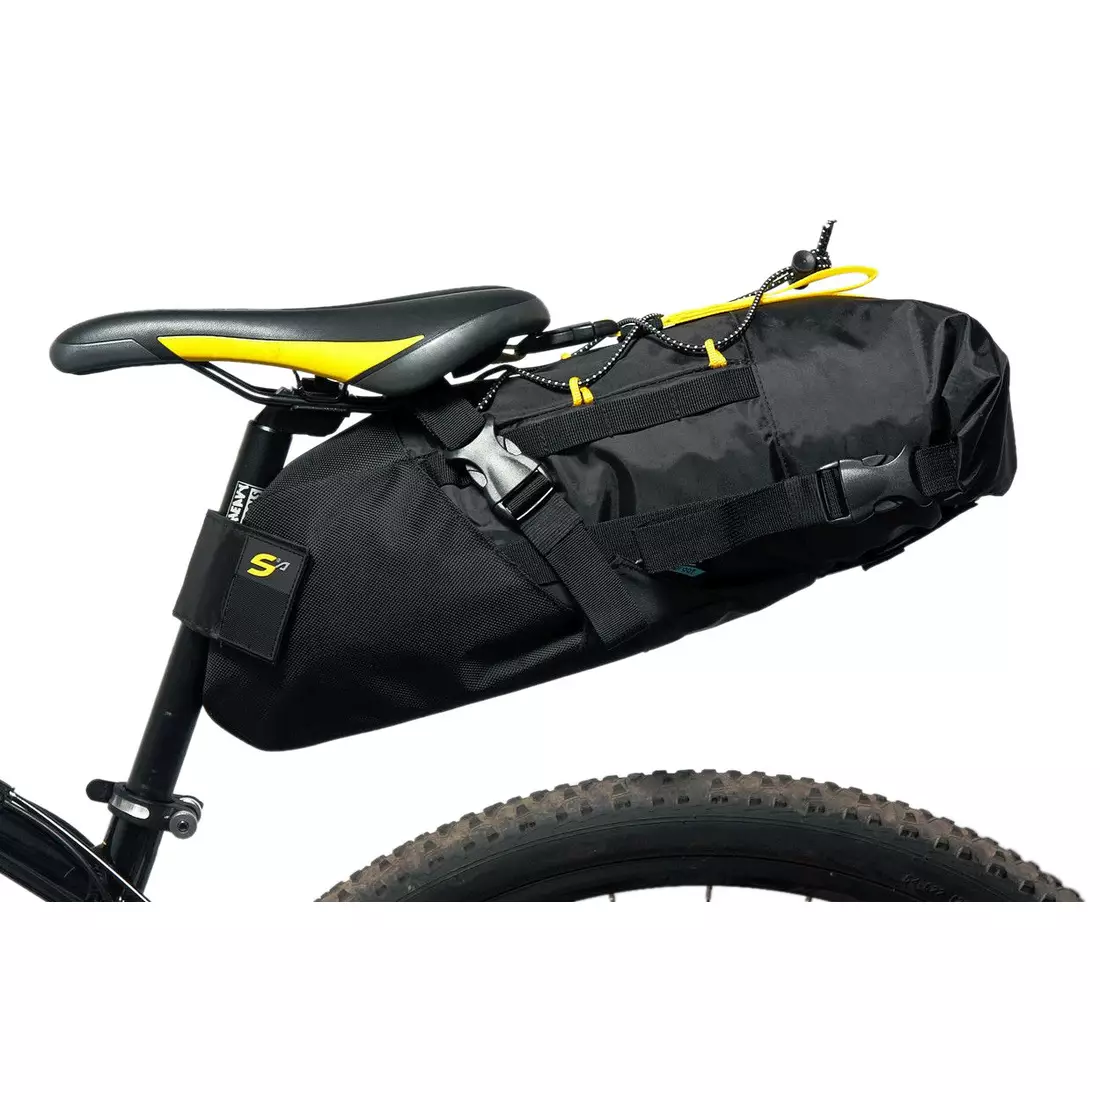 SPORT ARSENAL 602 W2B vízálló kerékpáros nyeregtáska, bikepacking